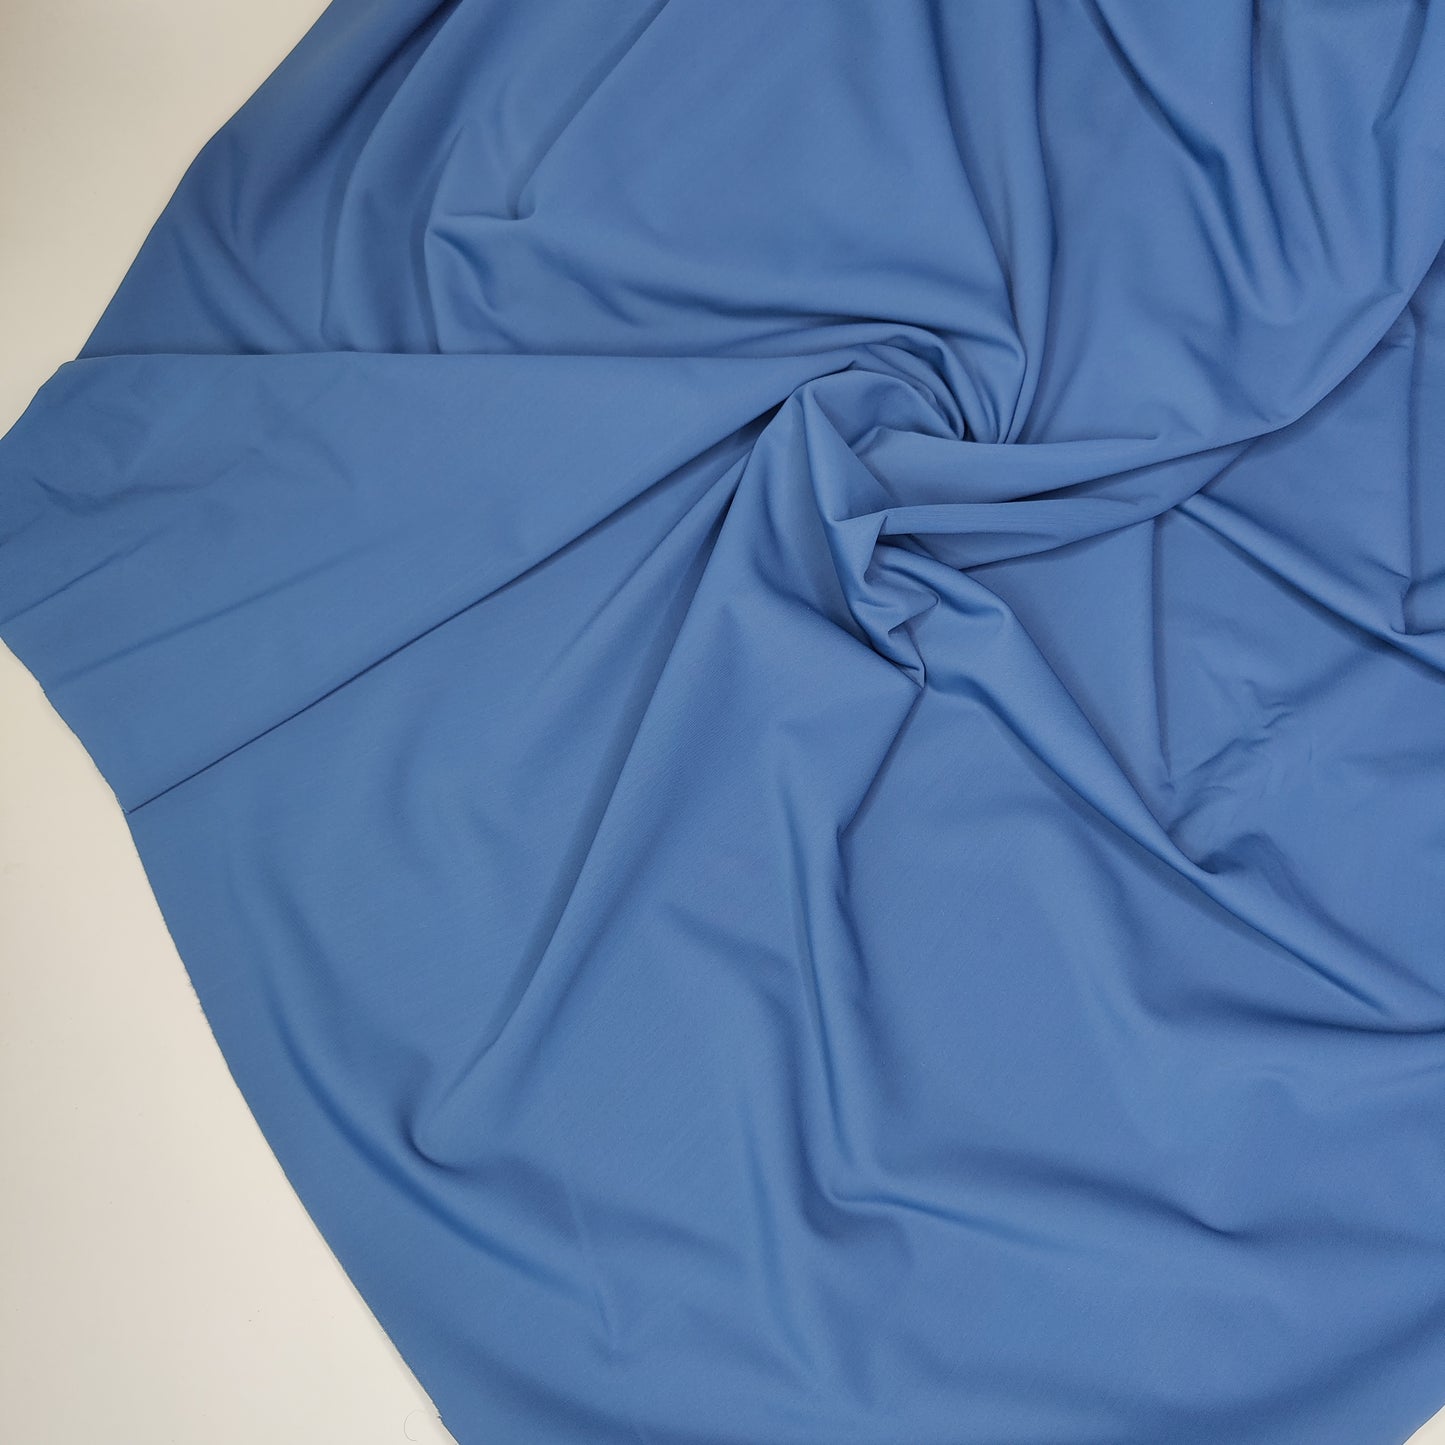 Mikrofaser, bi-elastische Wäscheware. Farbrichtung blue dusk